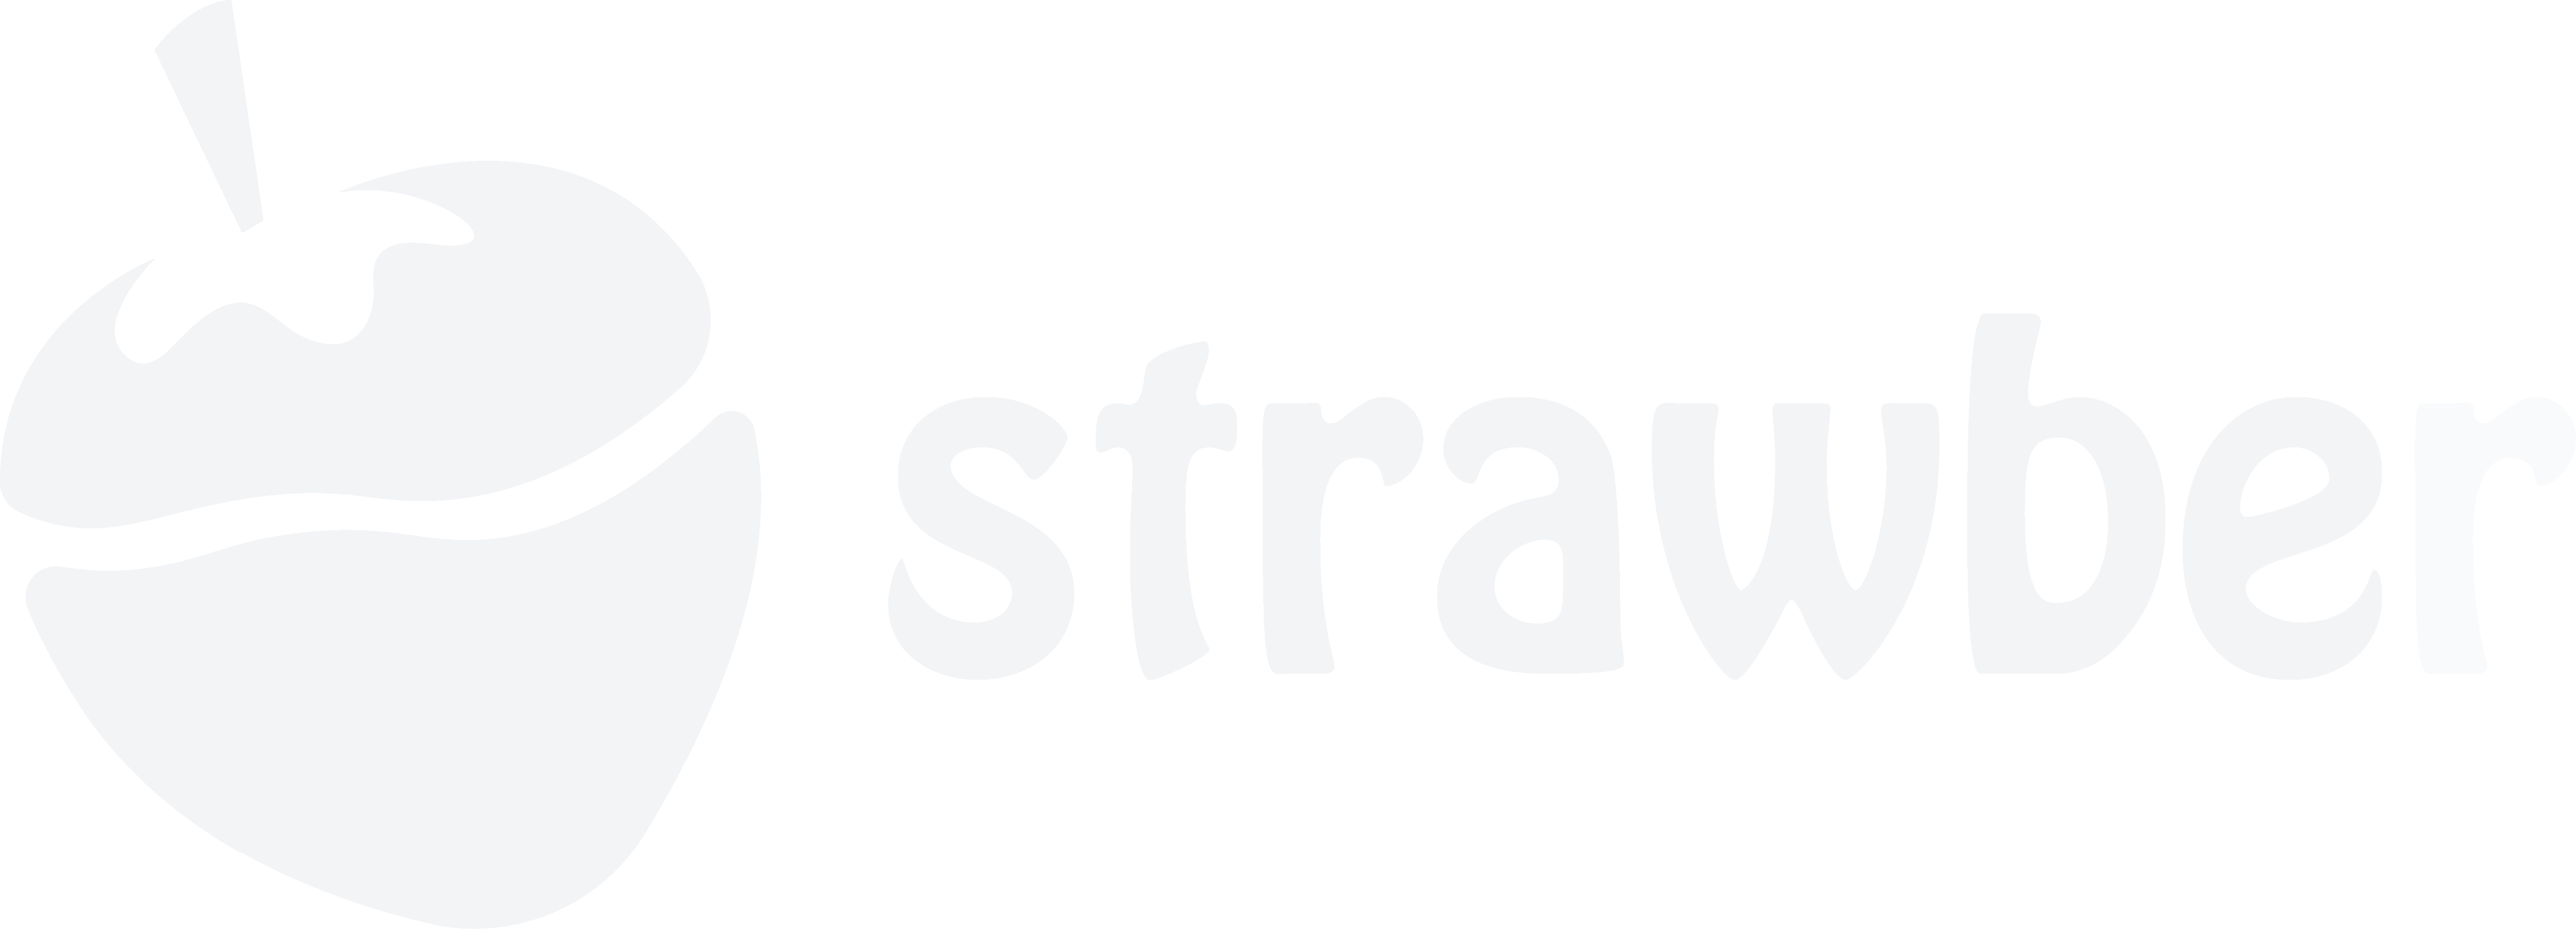 Strawber